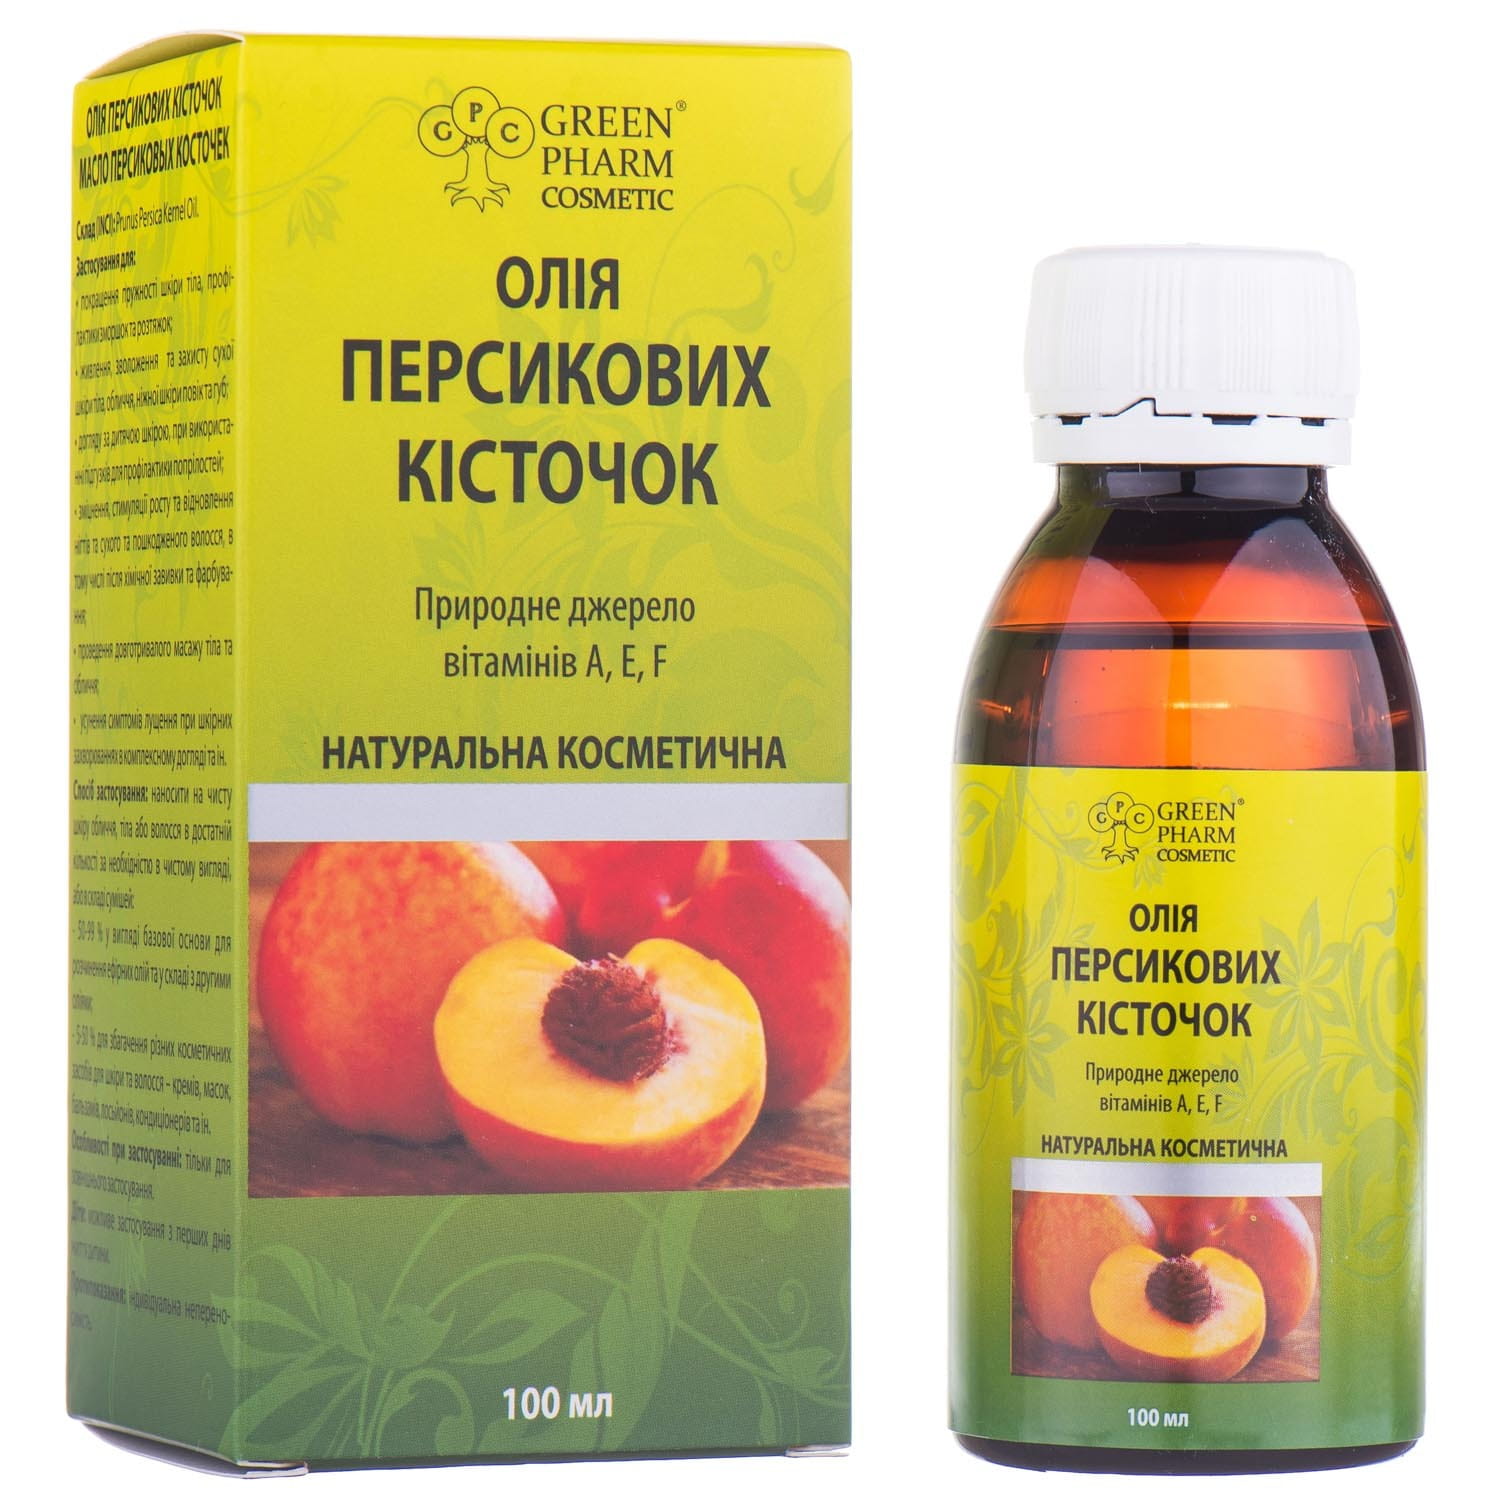 Dr Pill масло персиковое